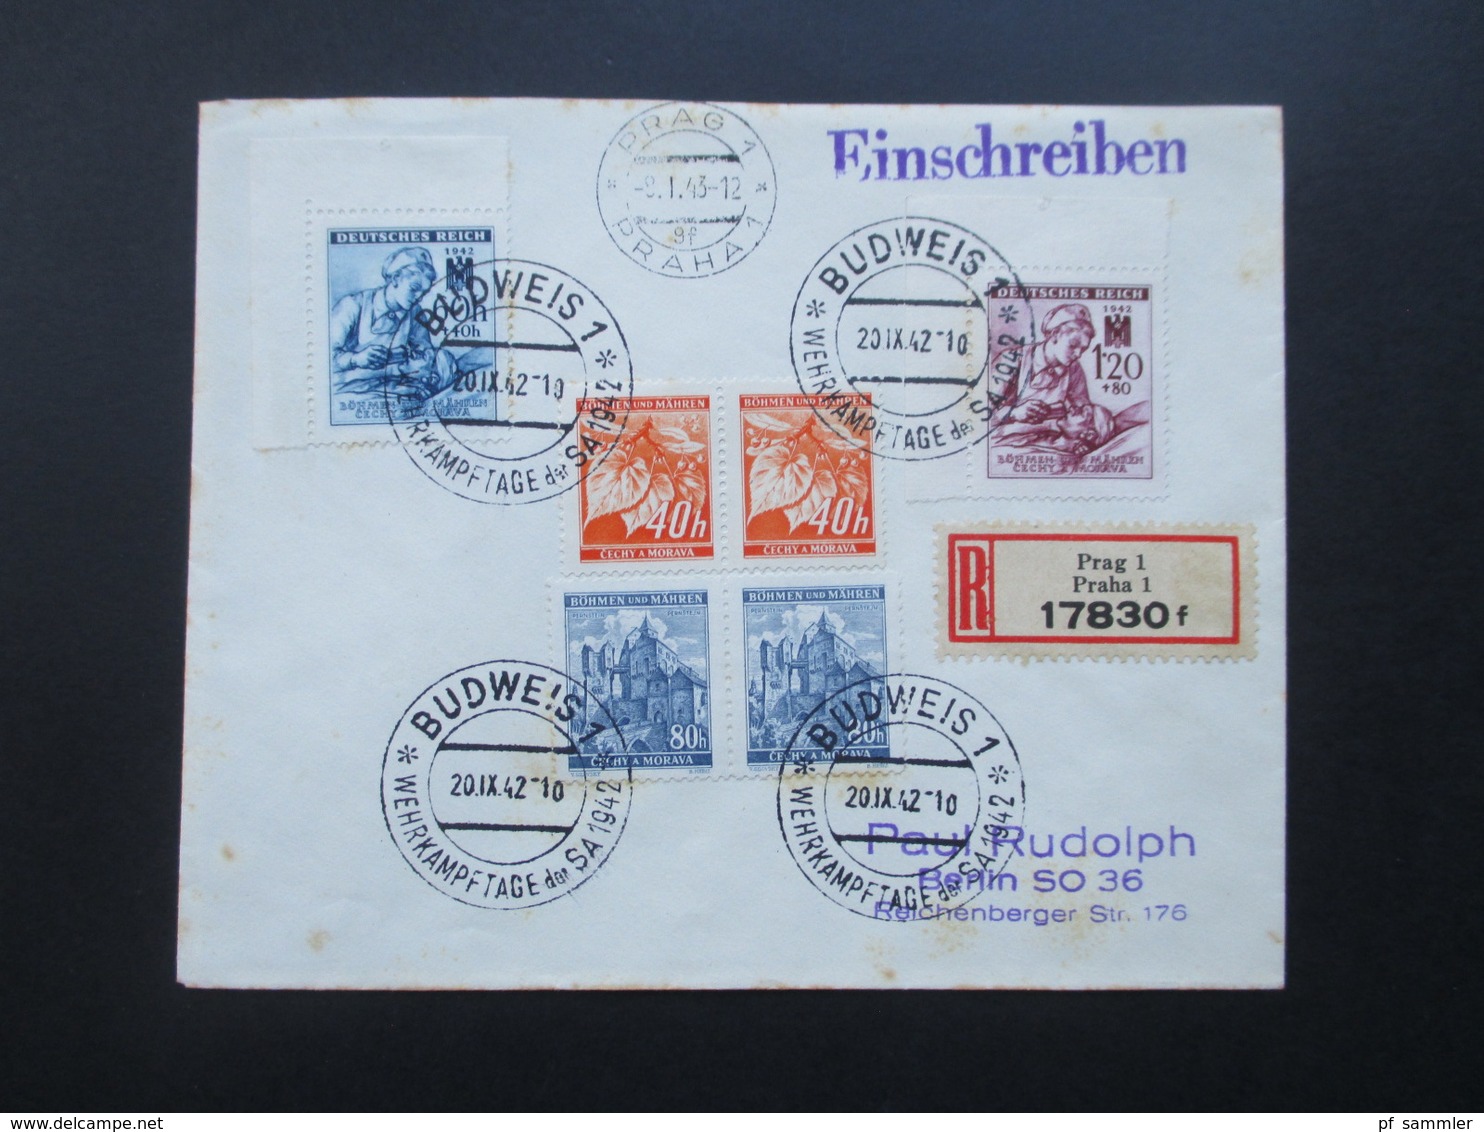 Böhmen Und Mähren 1942 / 43 SST / Sonderbeleg Ca. 3 Monate Später Echt Gelaufen Prag - Berlin! R-Brief Prag 1 17830 F - Storia Postale